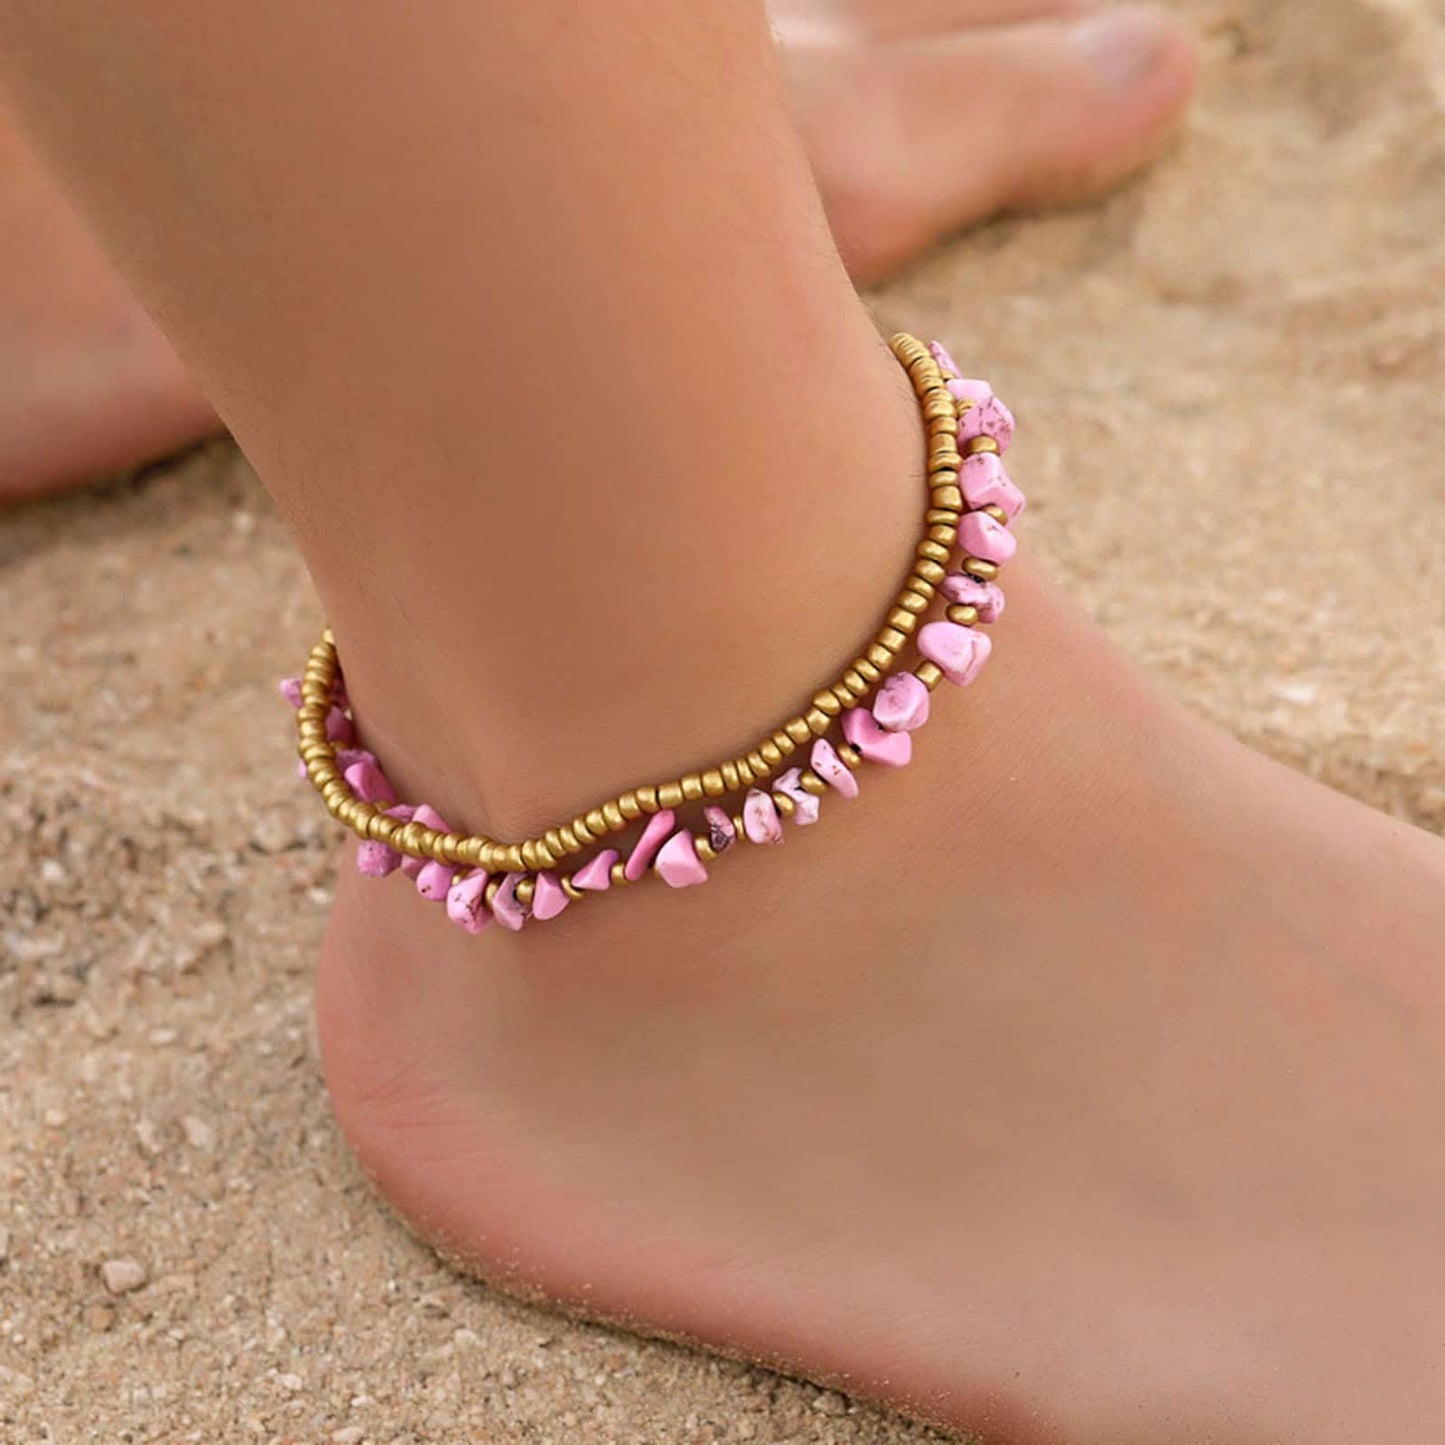 Double bracelet de cheville en éclats de tourmaline rose et perles de cuivre autour d'une cheville de femme pieds nus Kaosix